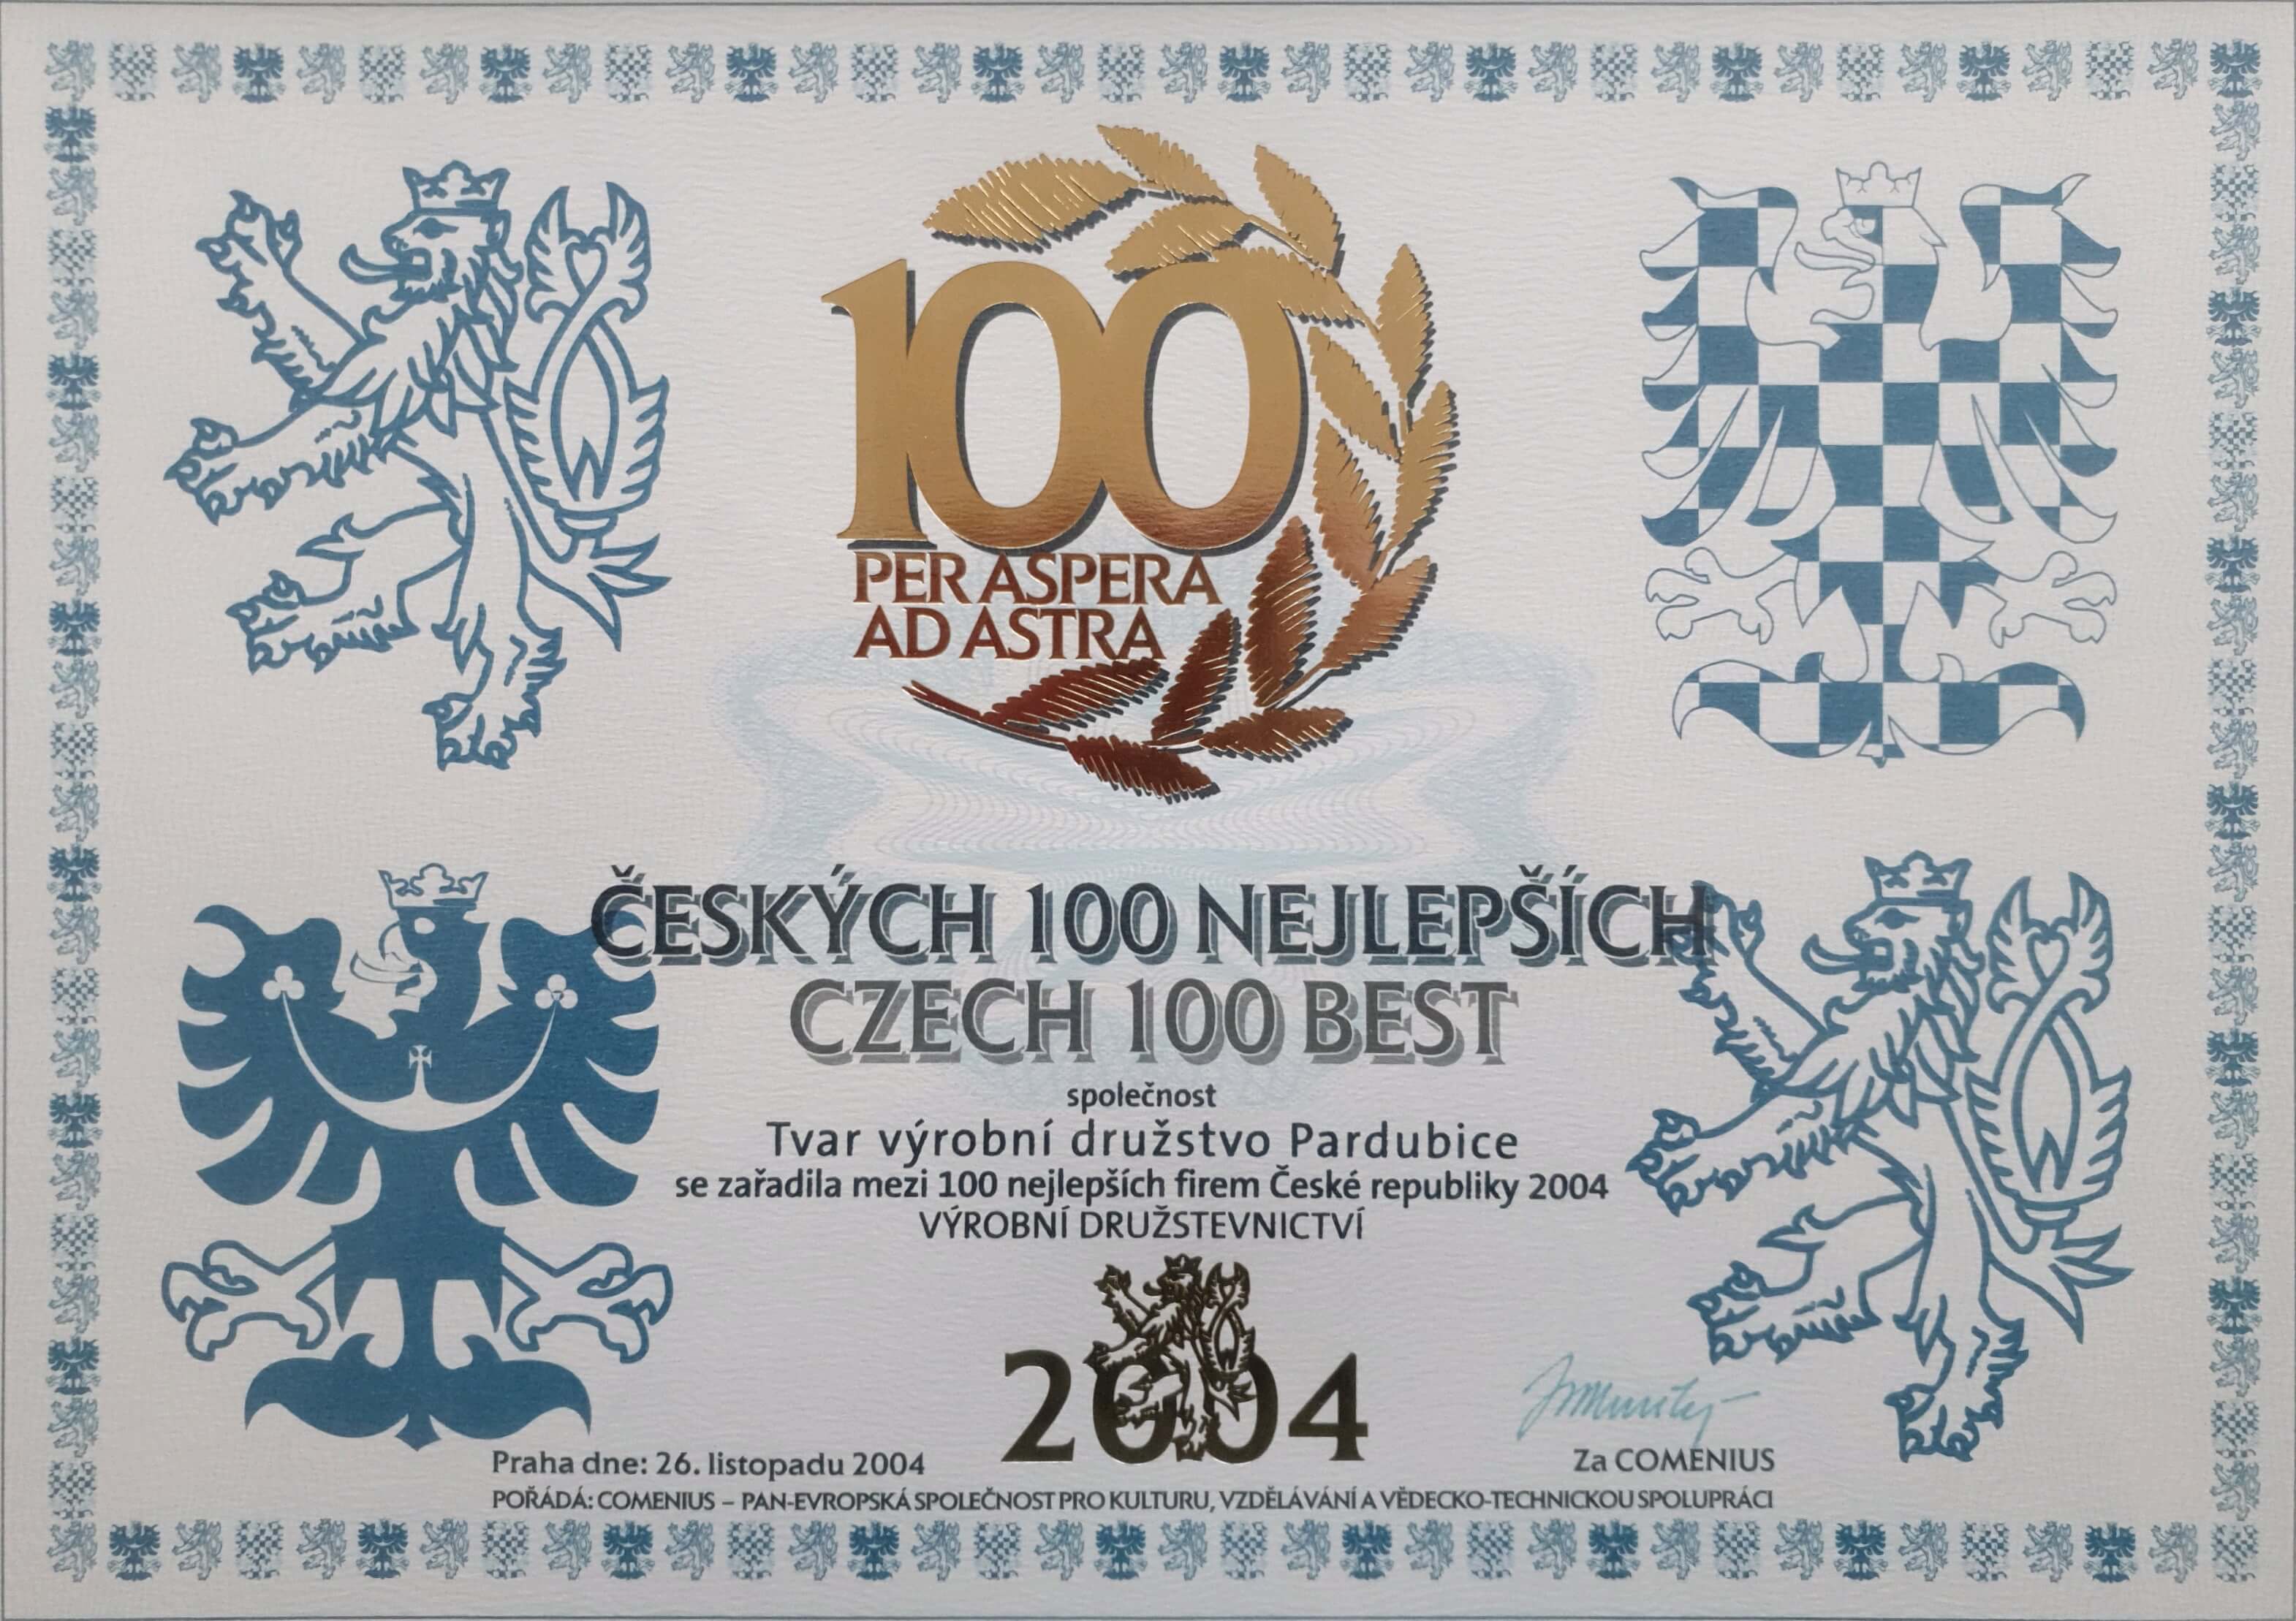 2004 - Czech 100 Best